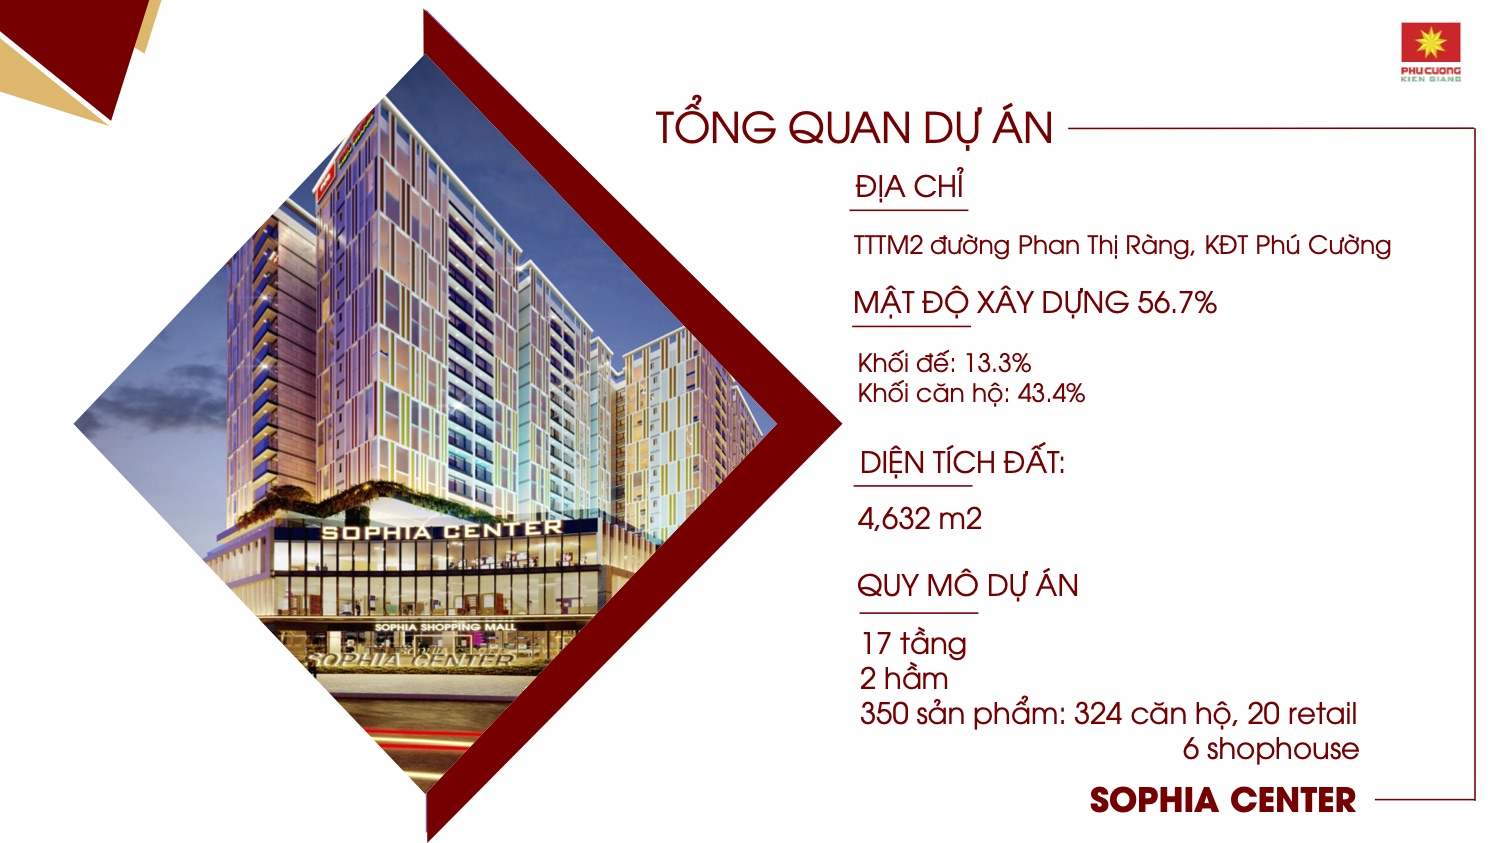 Thiết kế xây dựng chung về Chung Cư Sophia Center Phú Cường